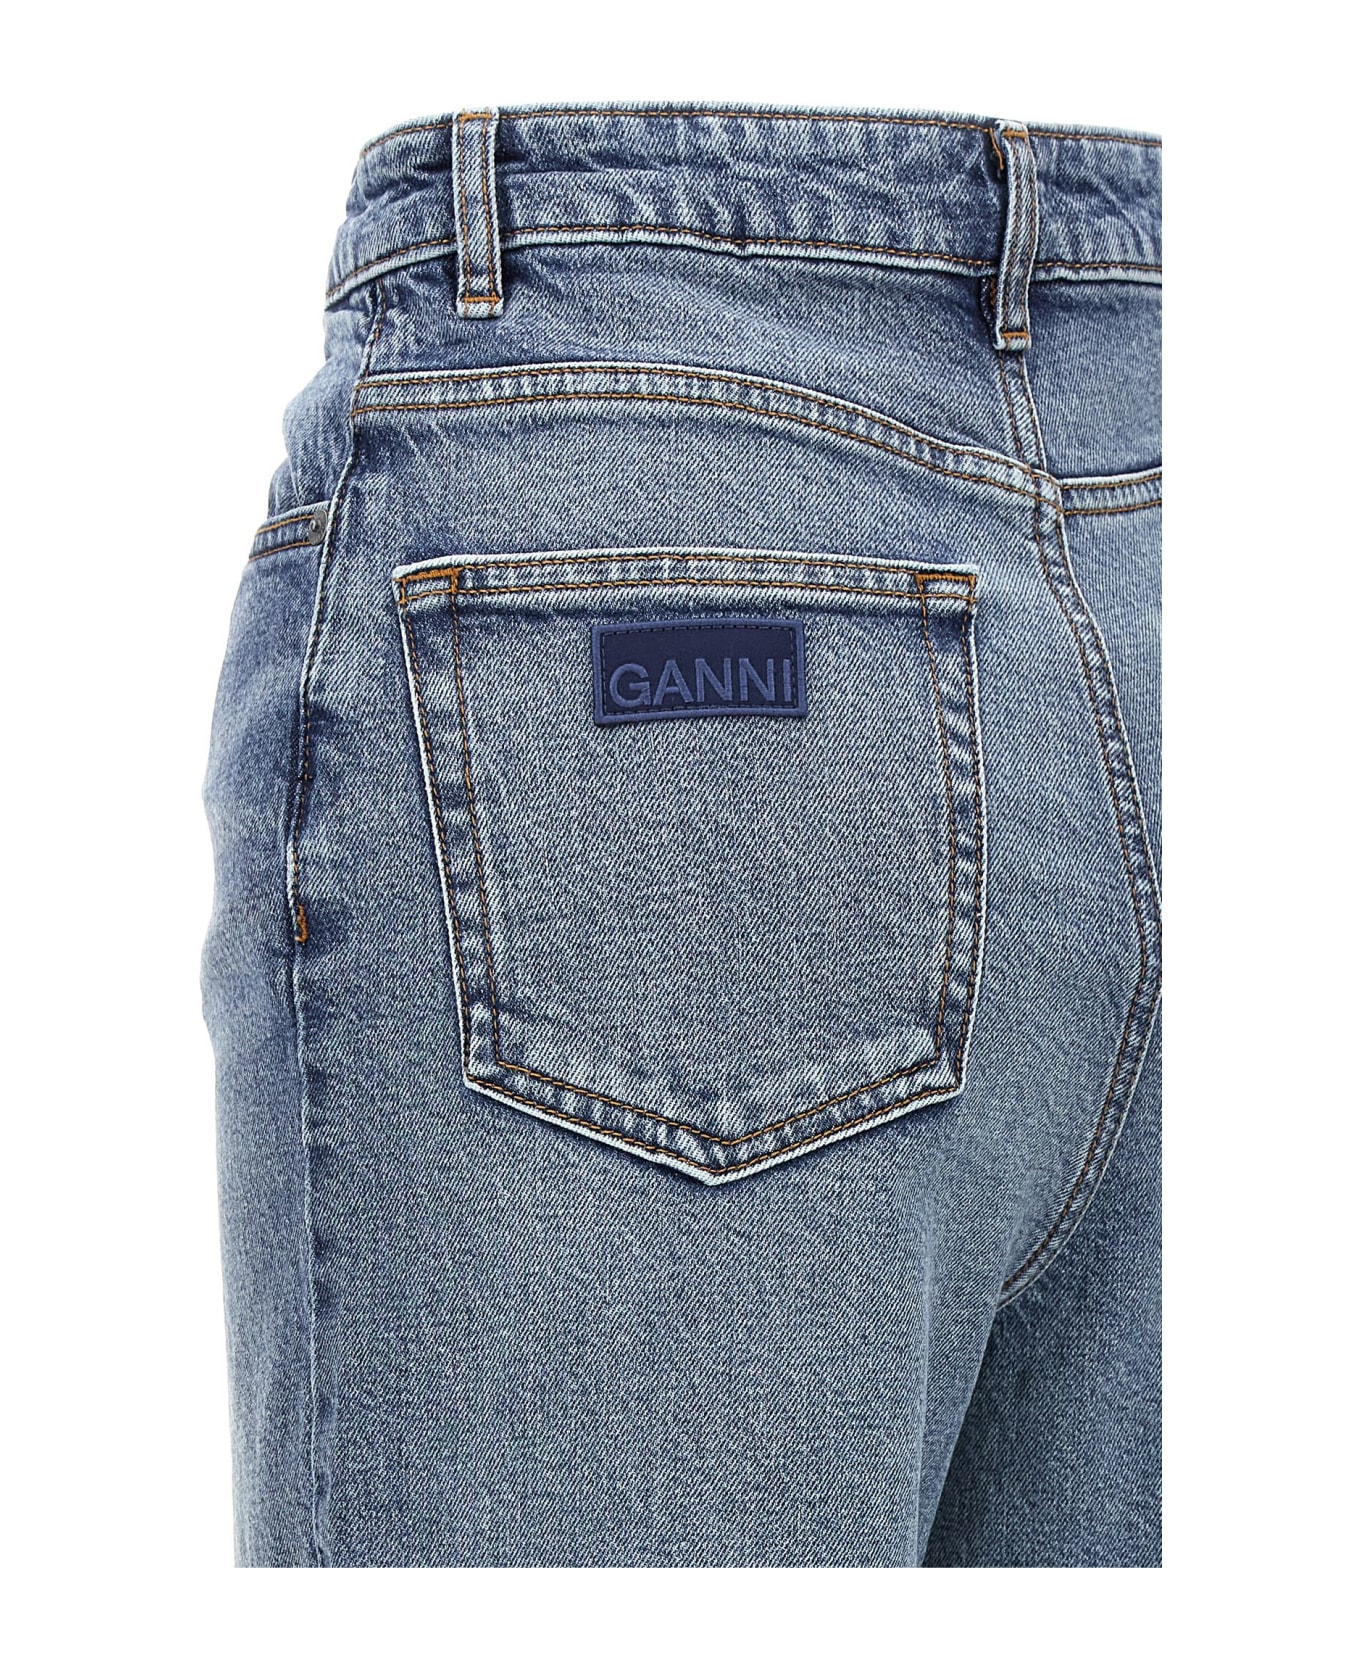 Ganni 'andi' Jeans - Mid Blue Vintage